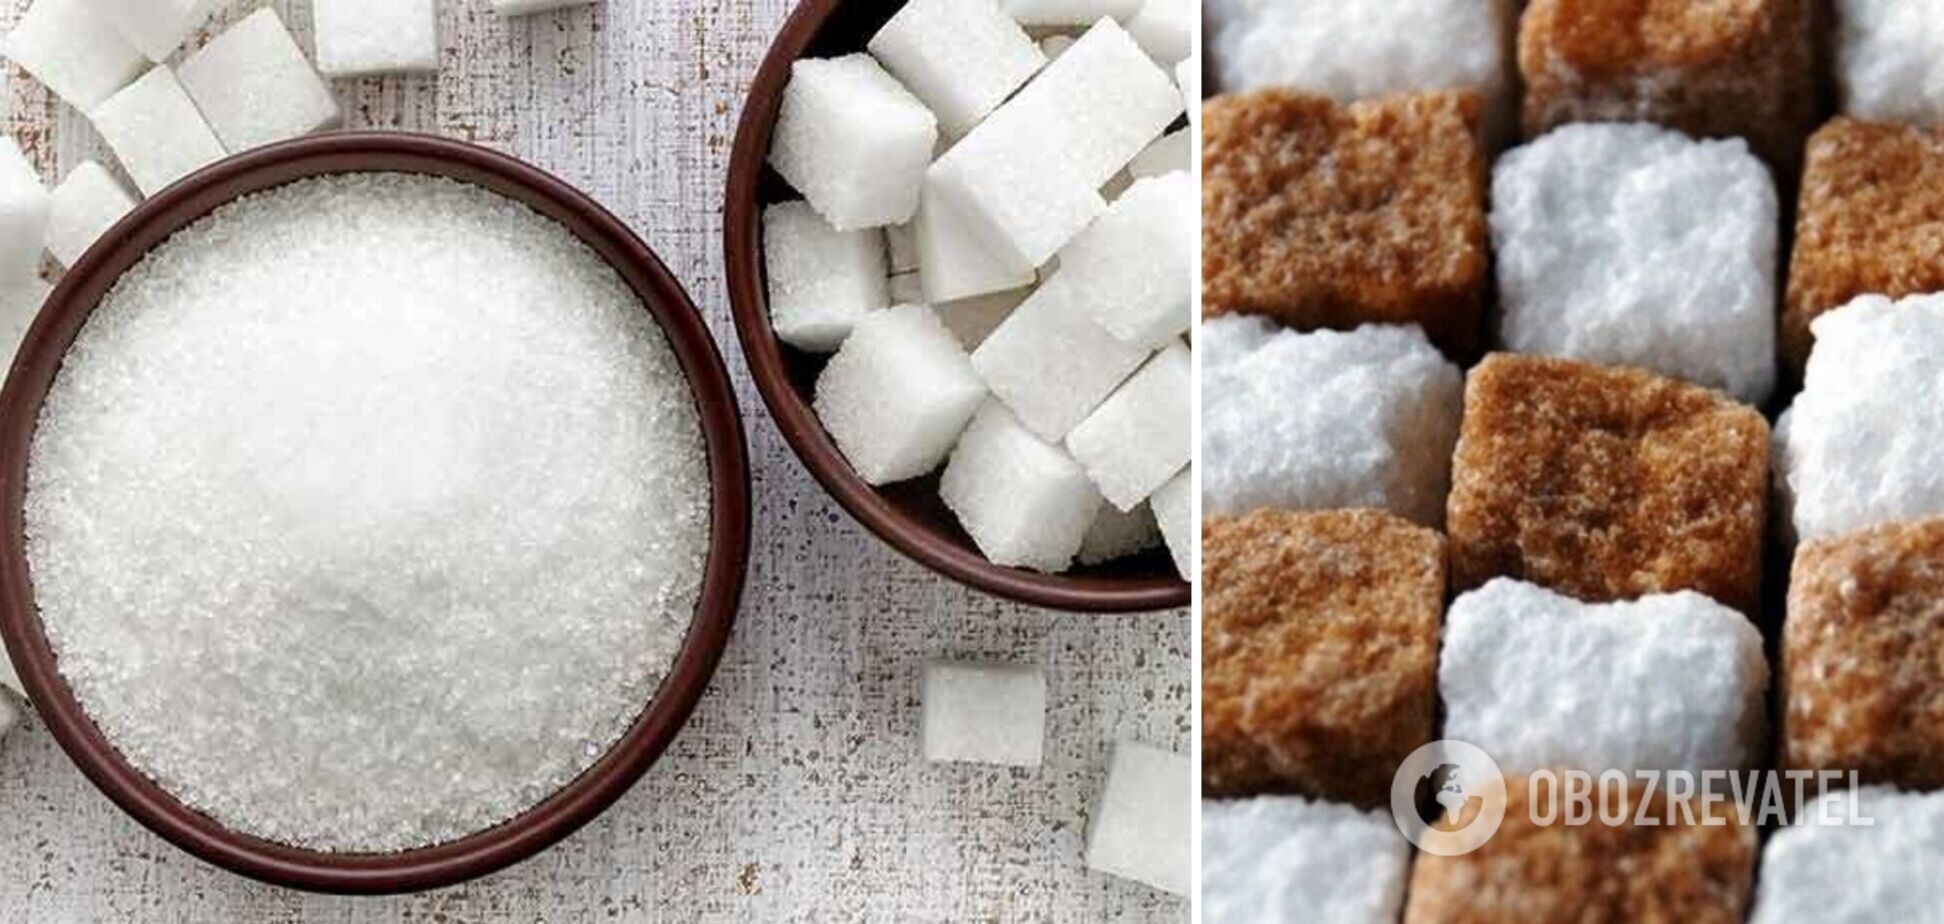 Цены на сахар выросли